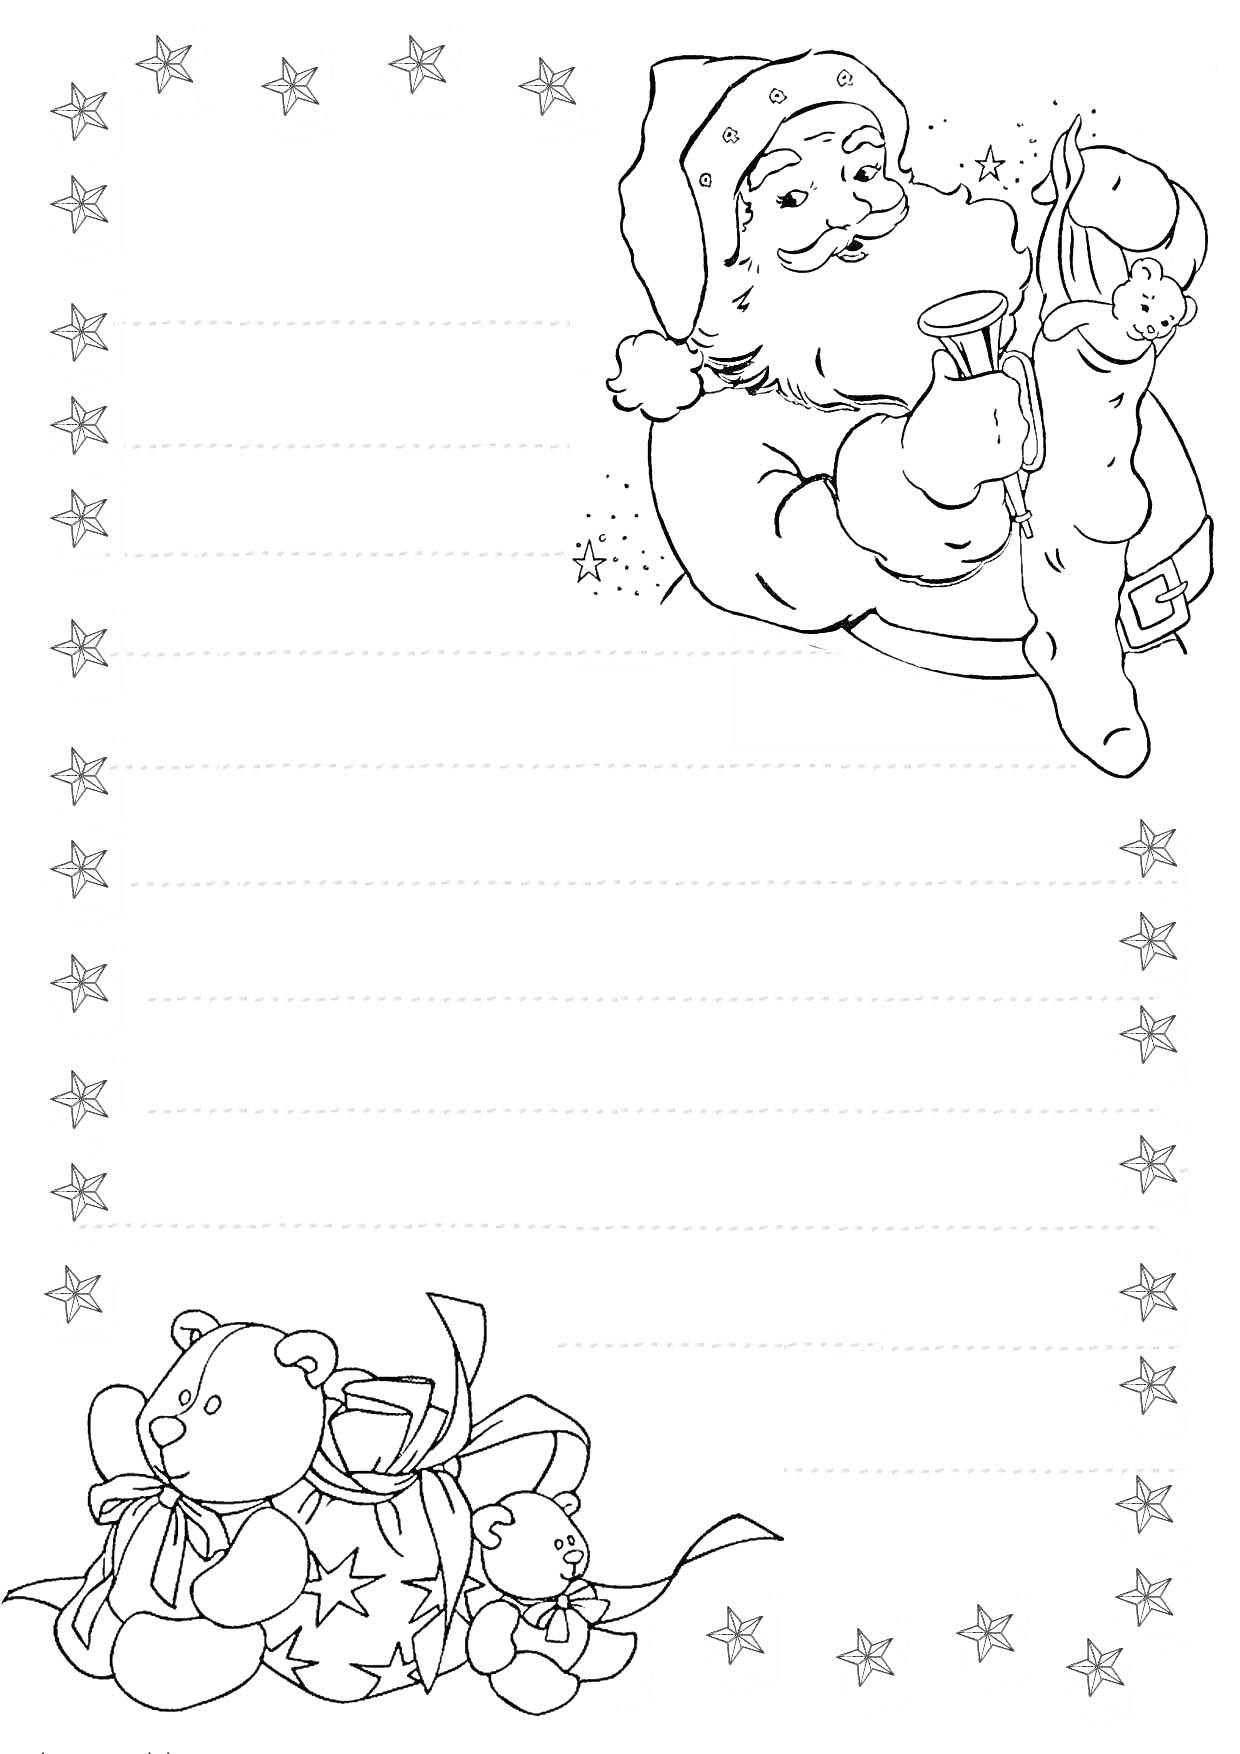 Раскраска Дед Мороз с мешком подарков и игрушки-медвежата, обрамленные звездами